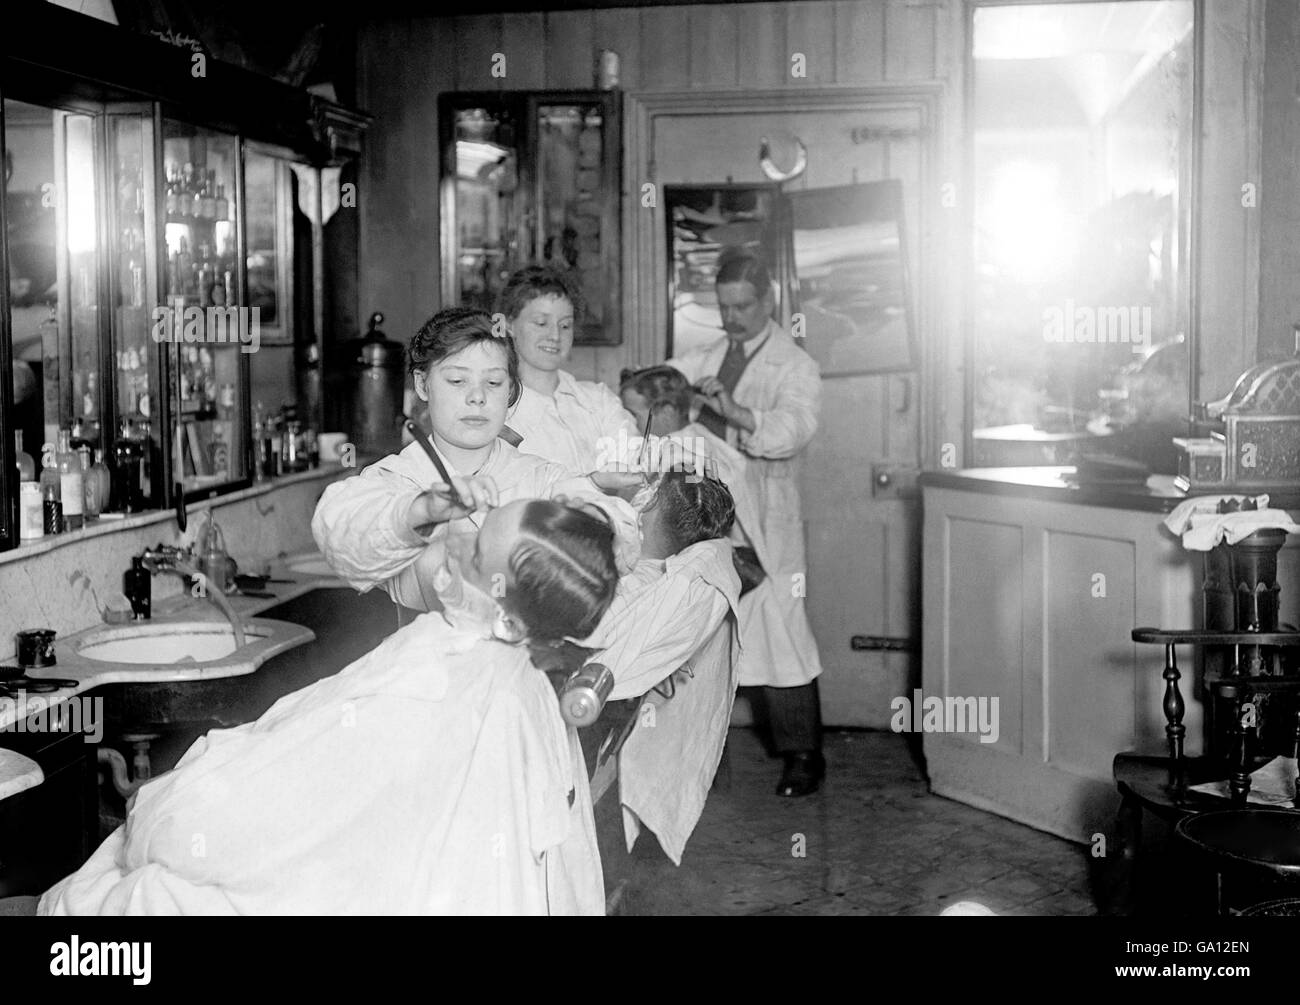 Una ragazza di quindici anni lavora in un barbiere vicino alla stazione di Waterloo. Le donne sono state incoraggiate ad assumere ruoli tradizionalmente riservati agli uomini, poiché molti uomini erano lontani combattendo nelle trincee. Foto Stock